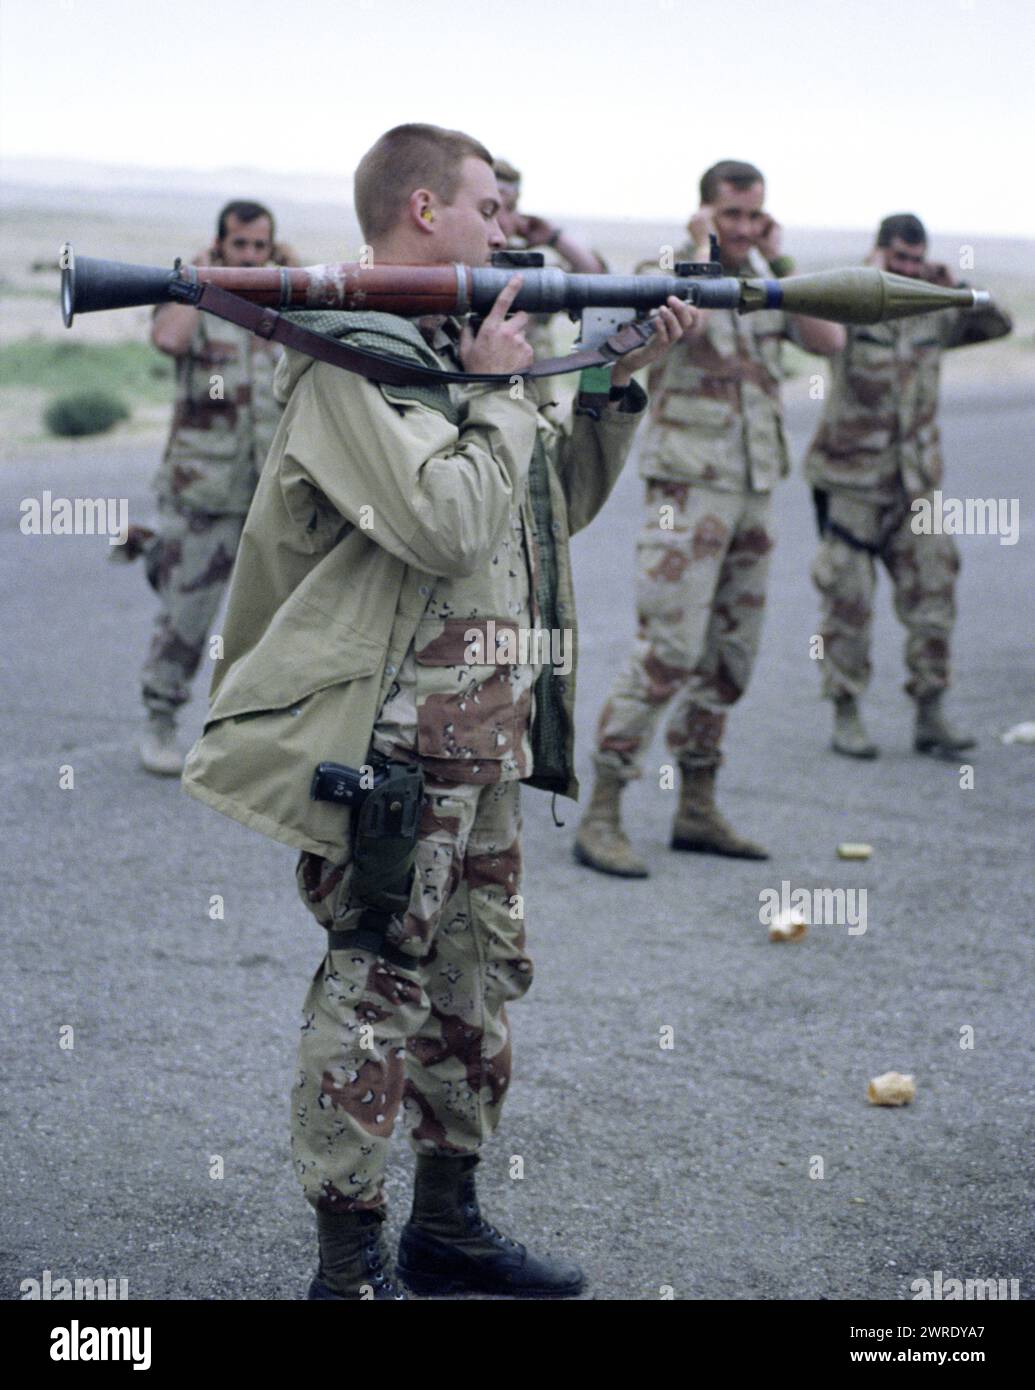 23 mars 1991 les soldats de l'armée américaine s'amusent avec un lanceur irakien abandonné RPG-7 dans le désert au nord-est du Koweït. Banque D'Images